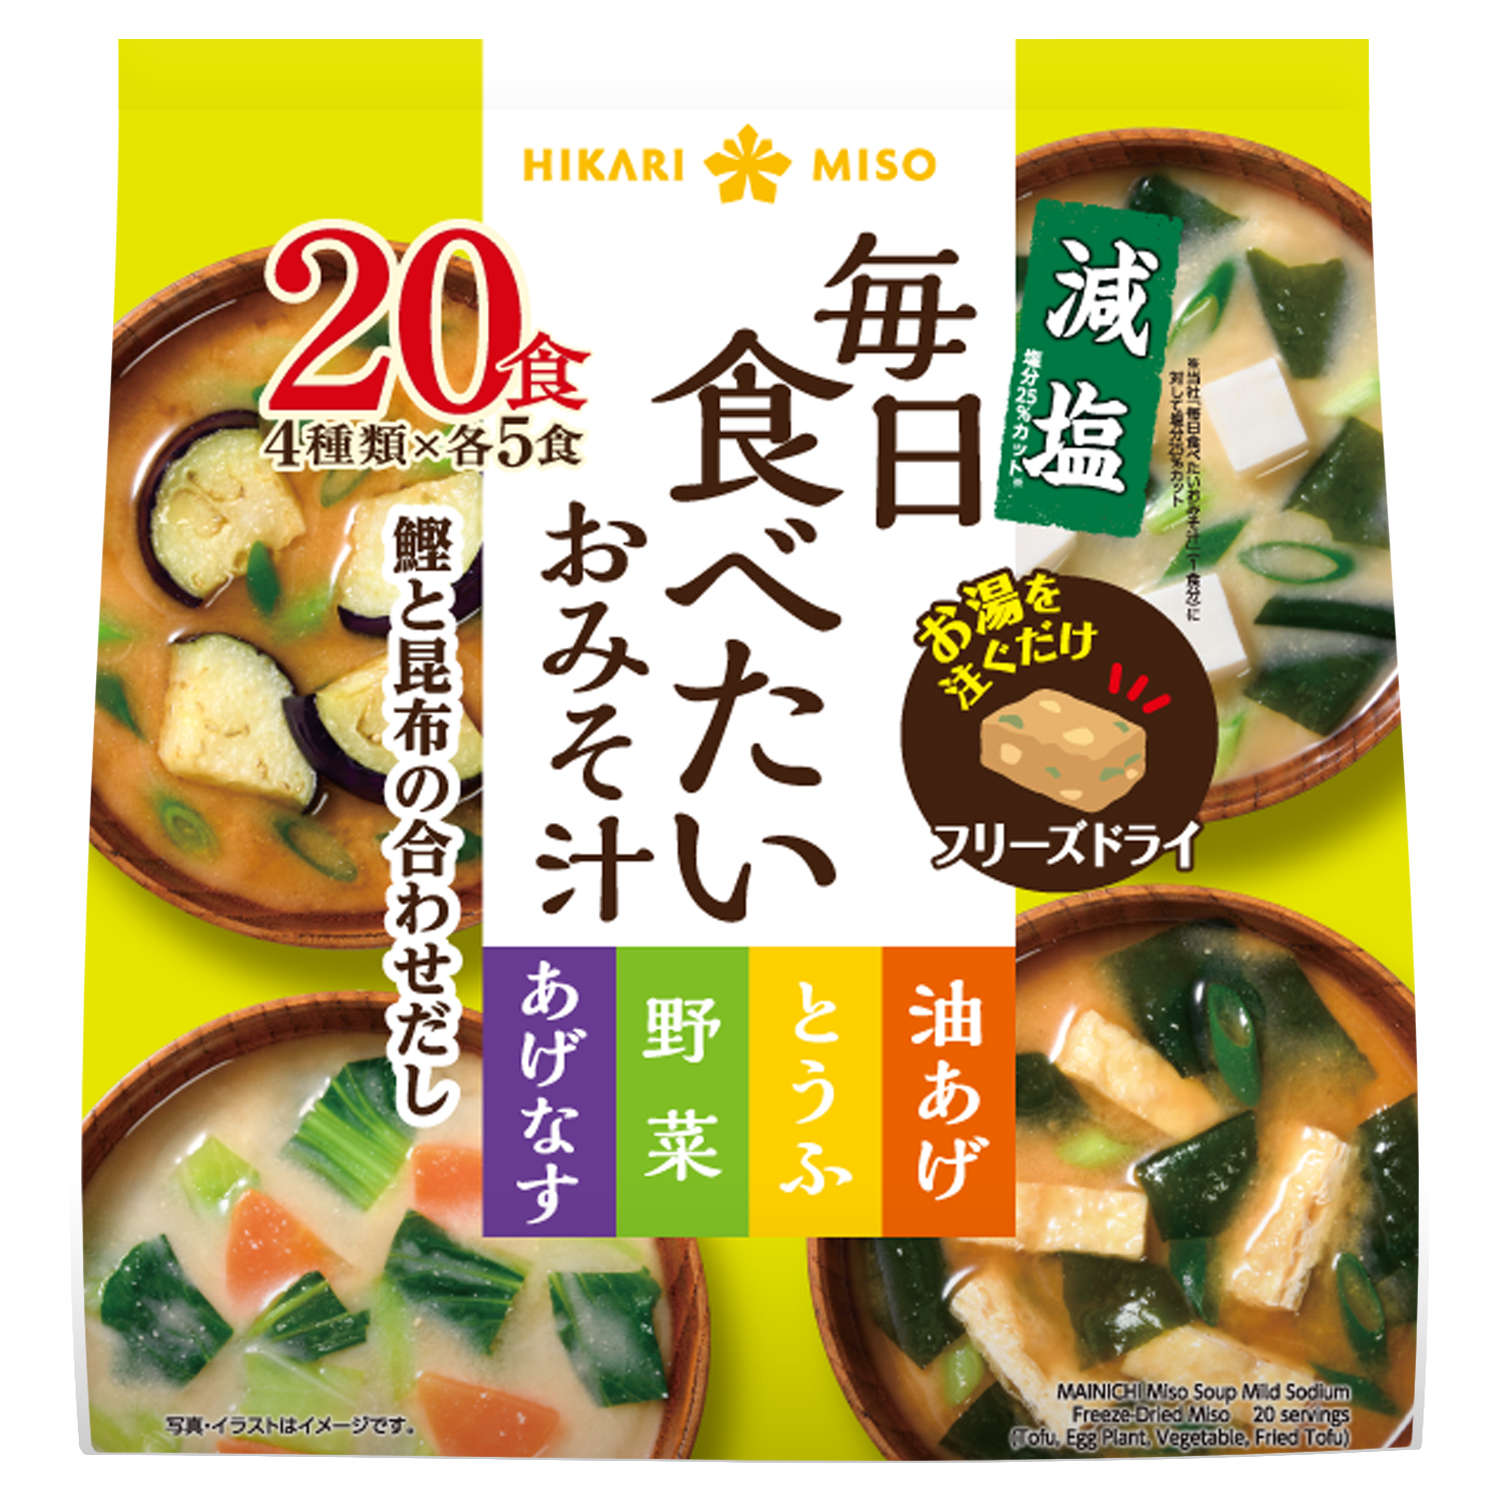 Mainichi Miso Soup Mild Sodium Freeze-Dried Miso 20 Servings5.7OZ (162.5 G)